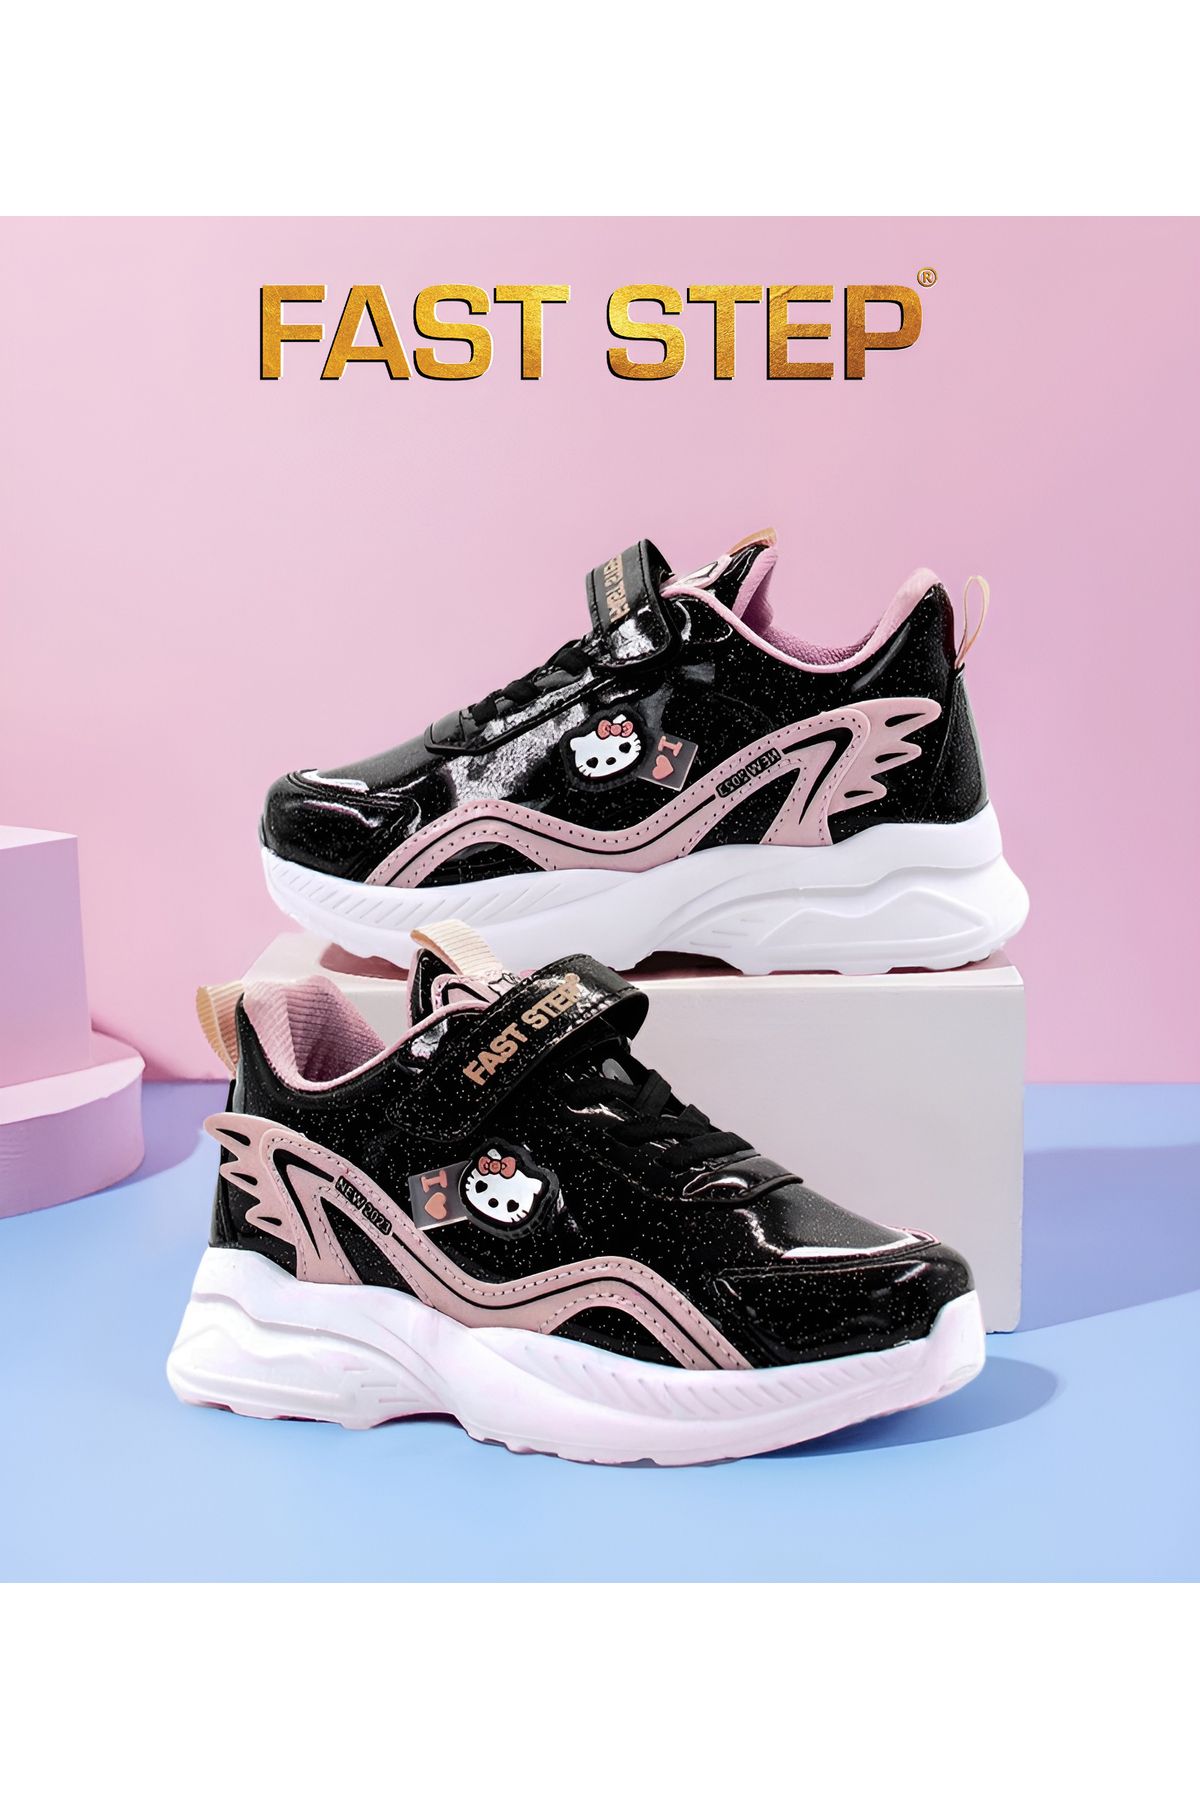 Fast Step Unisex Spor Rahat Taban Hafif Sneaker Cırt Cırtlı Yazlık Çocuk Ayakkabı 615xca1907